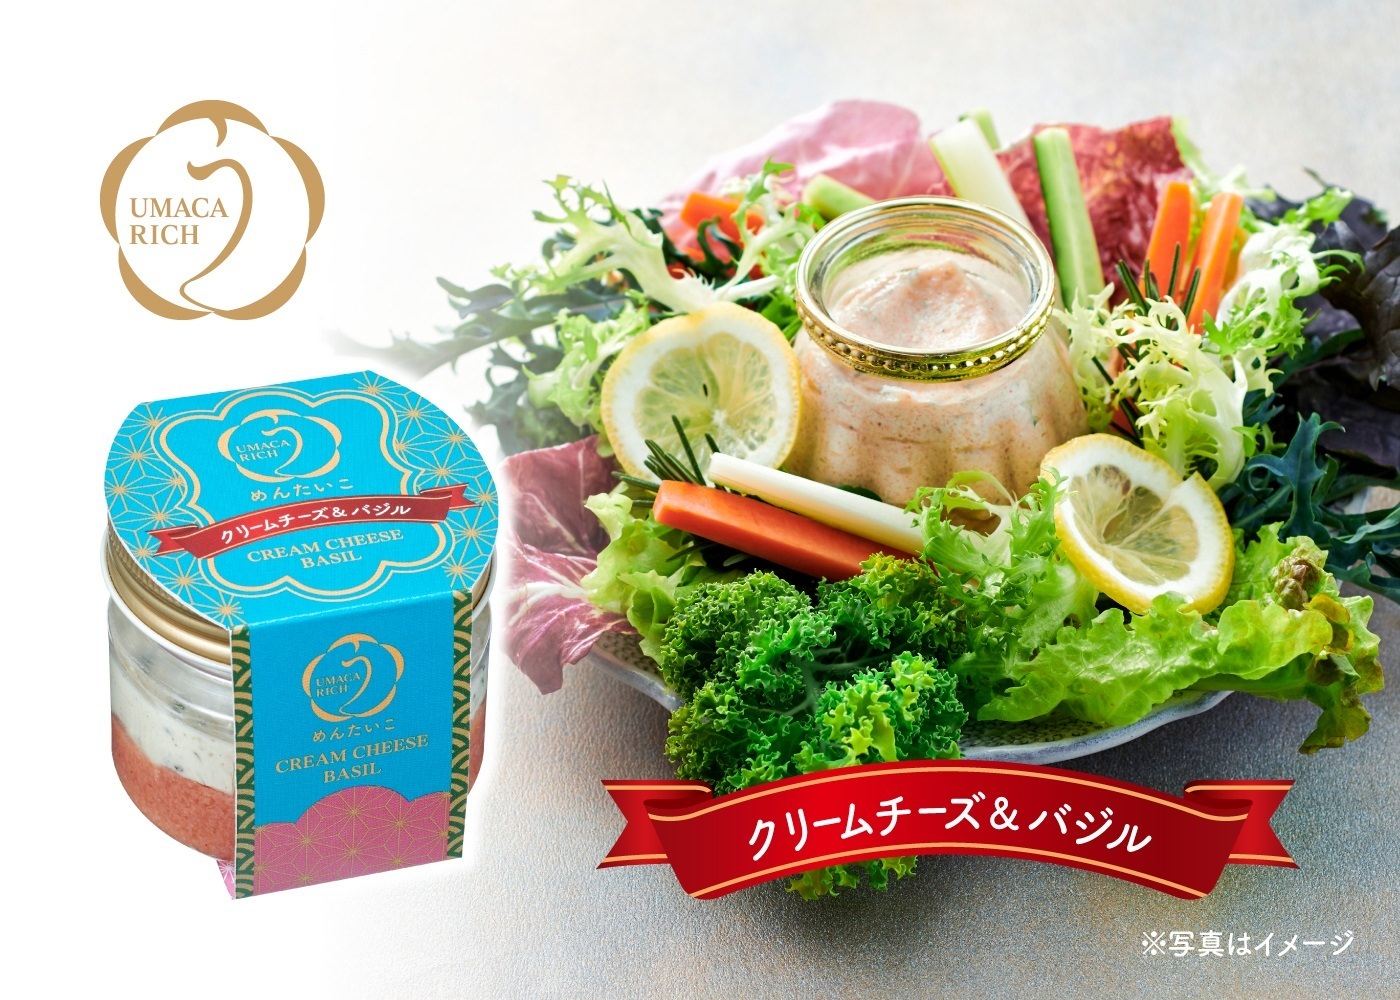 中華万能調味料「創味シャンタン」を使用したたれ付きの
“カット野菜ミックス”が登場！
もやしブランド「名水美人」より3/1～販売開始